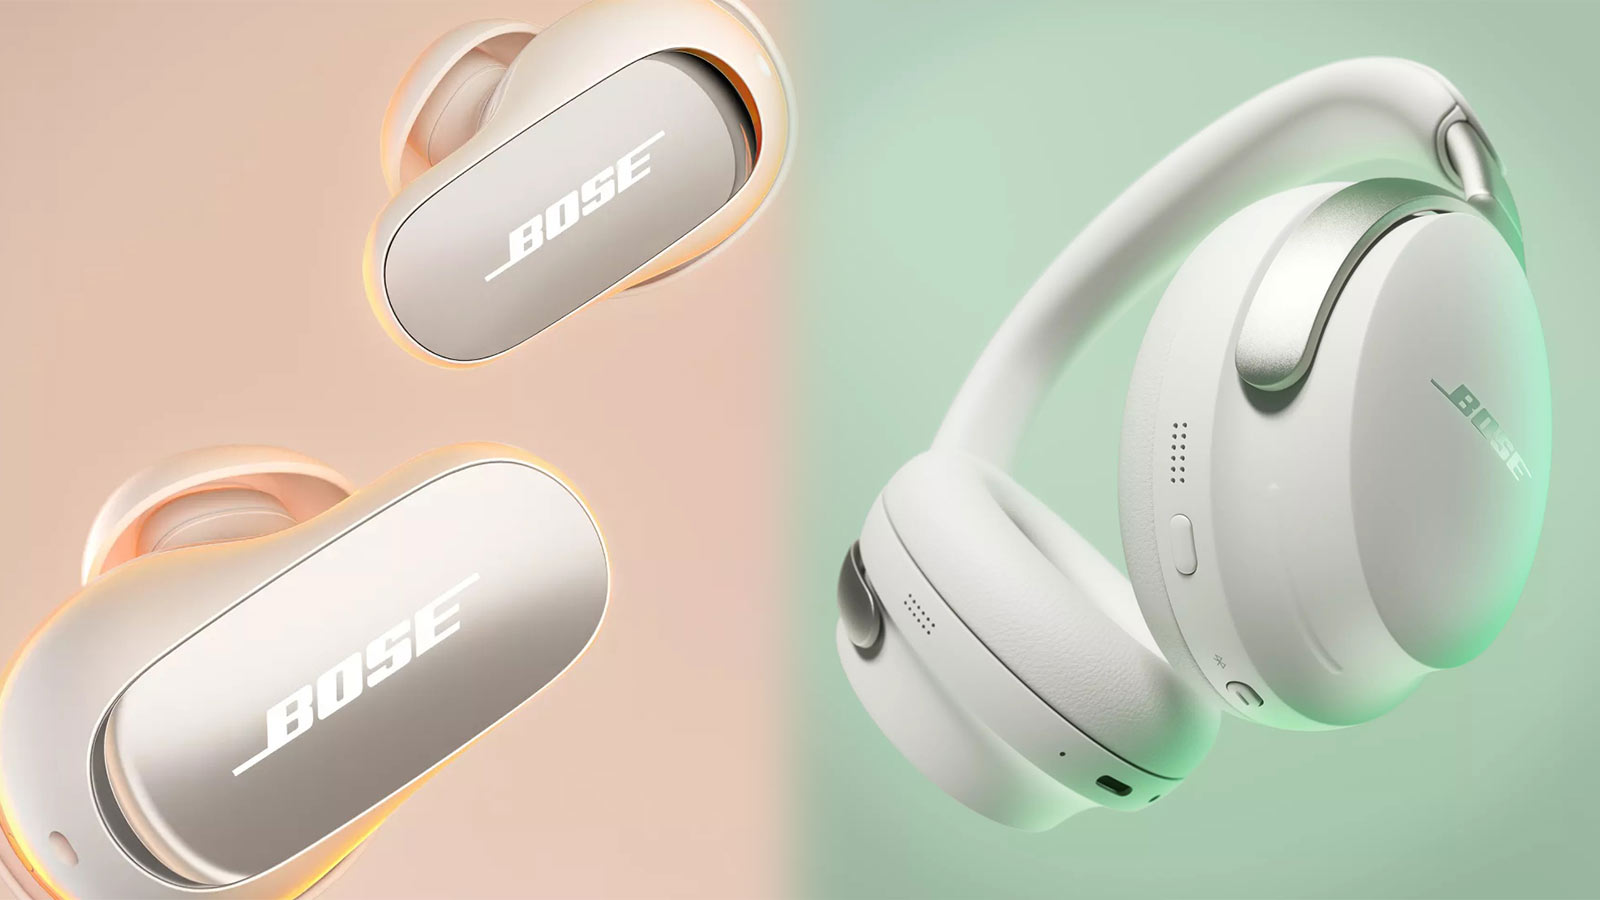 Bose QuietComfort Headphones & Earbuds